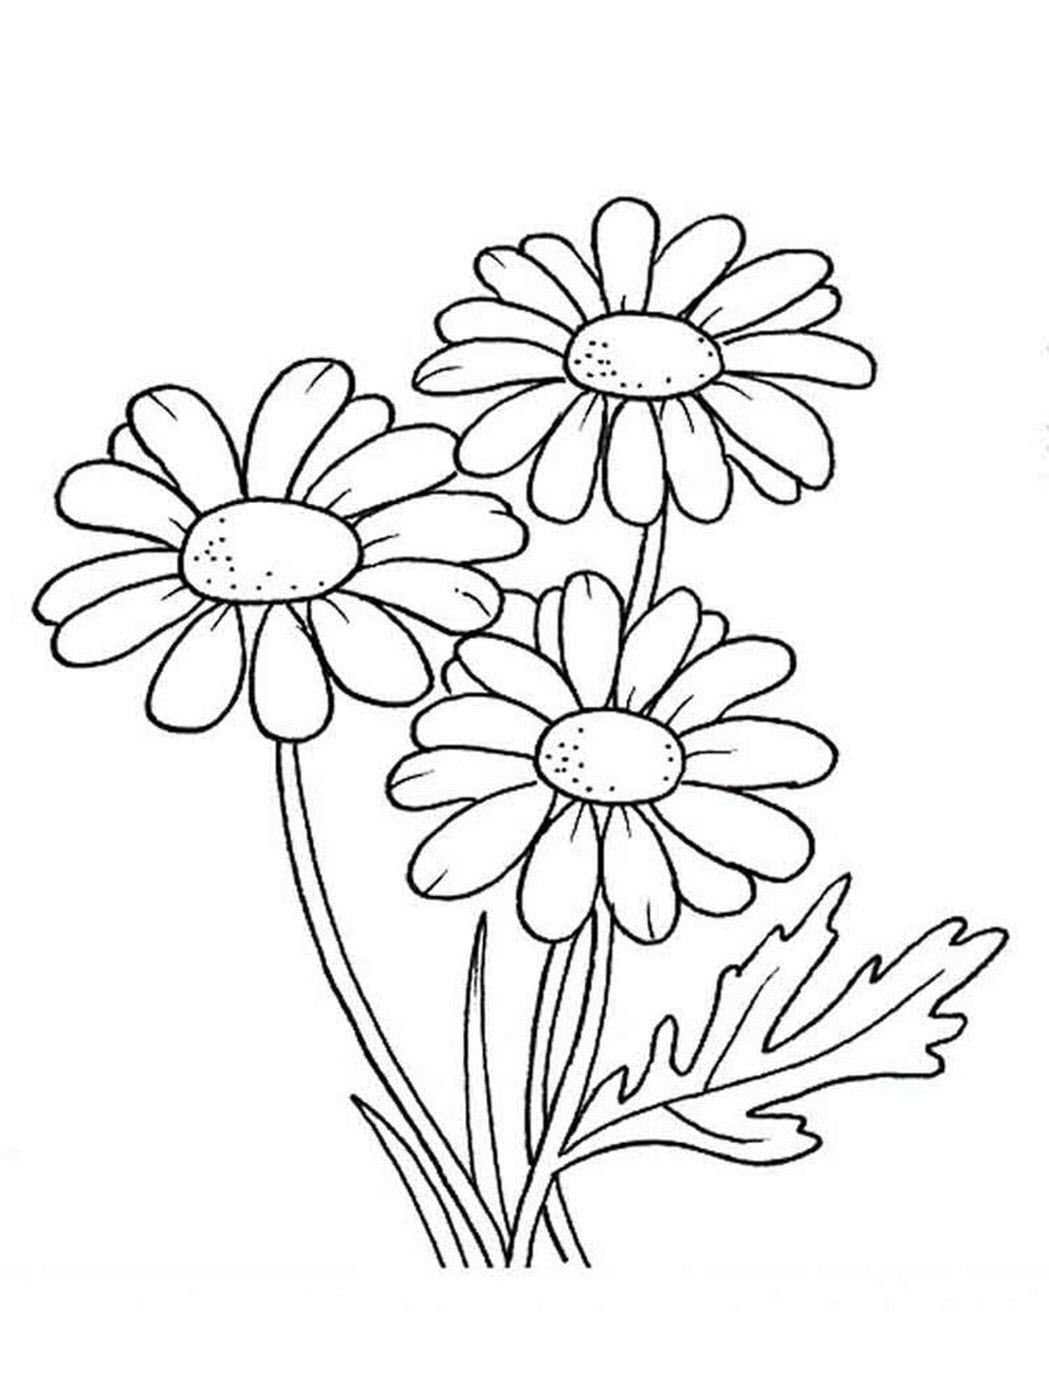 Xem hơn 48 ảnh về hình vẽ hoa cúc đơn giản - daotaonec